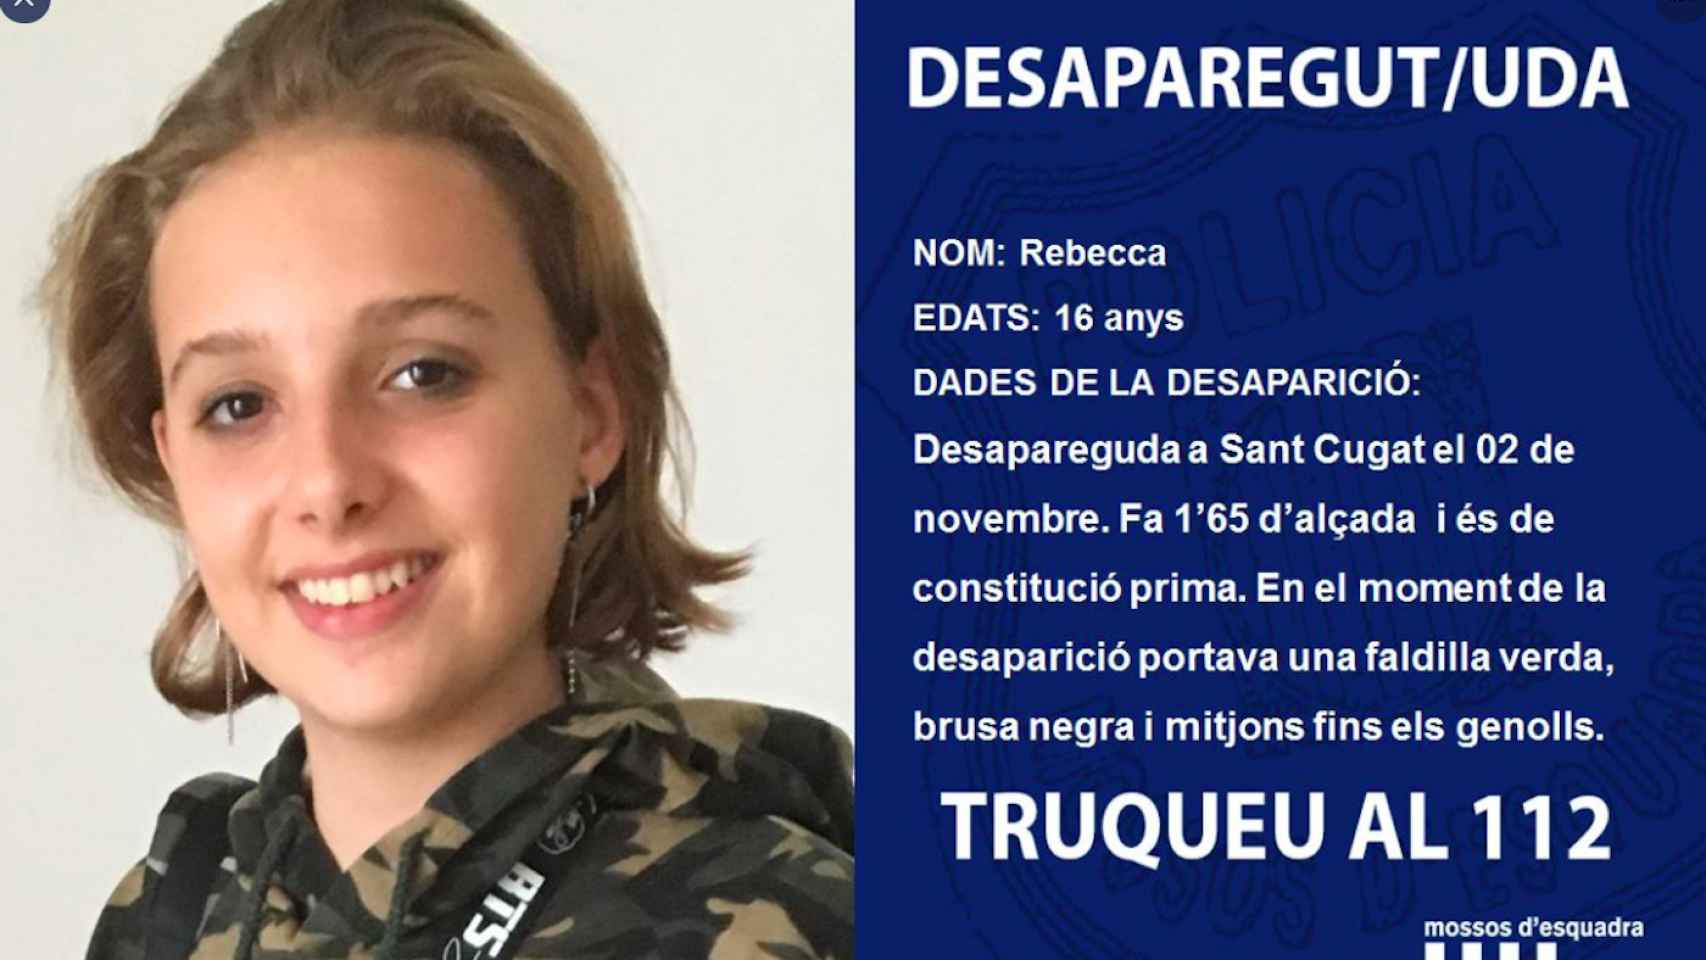 Descripción de Rebecca, la menor de 16 años desaparecida que ha puesto en alarma a los Mossos d'Esquadra / MOSSOS D'ESQUADRA